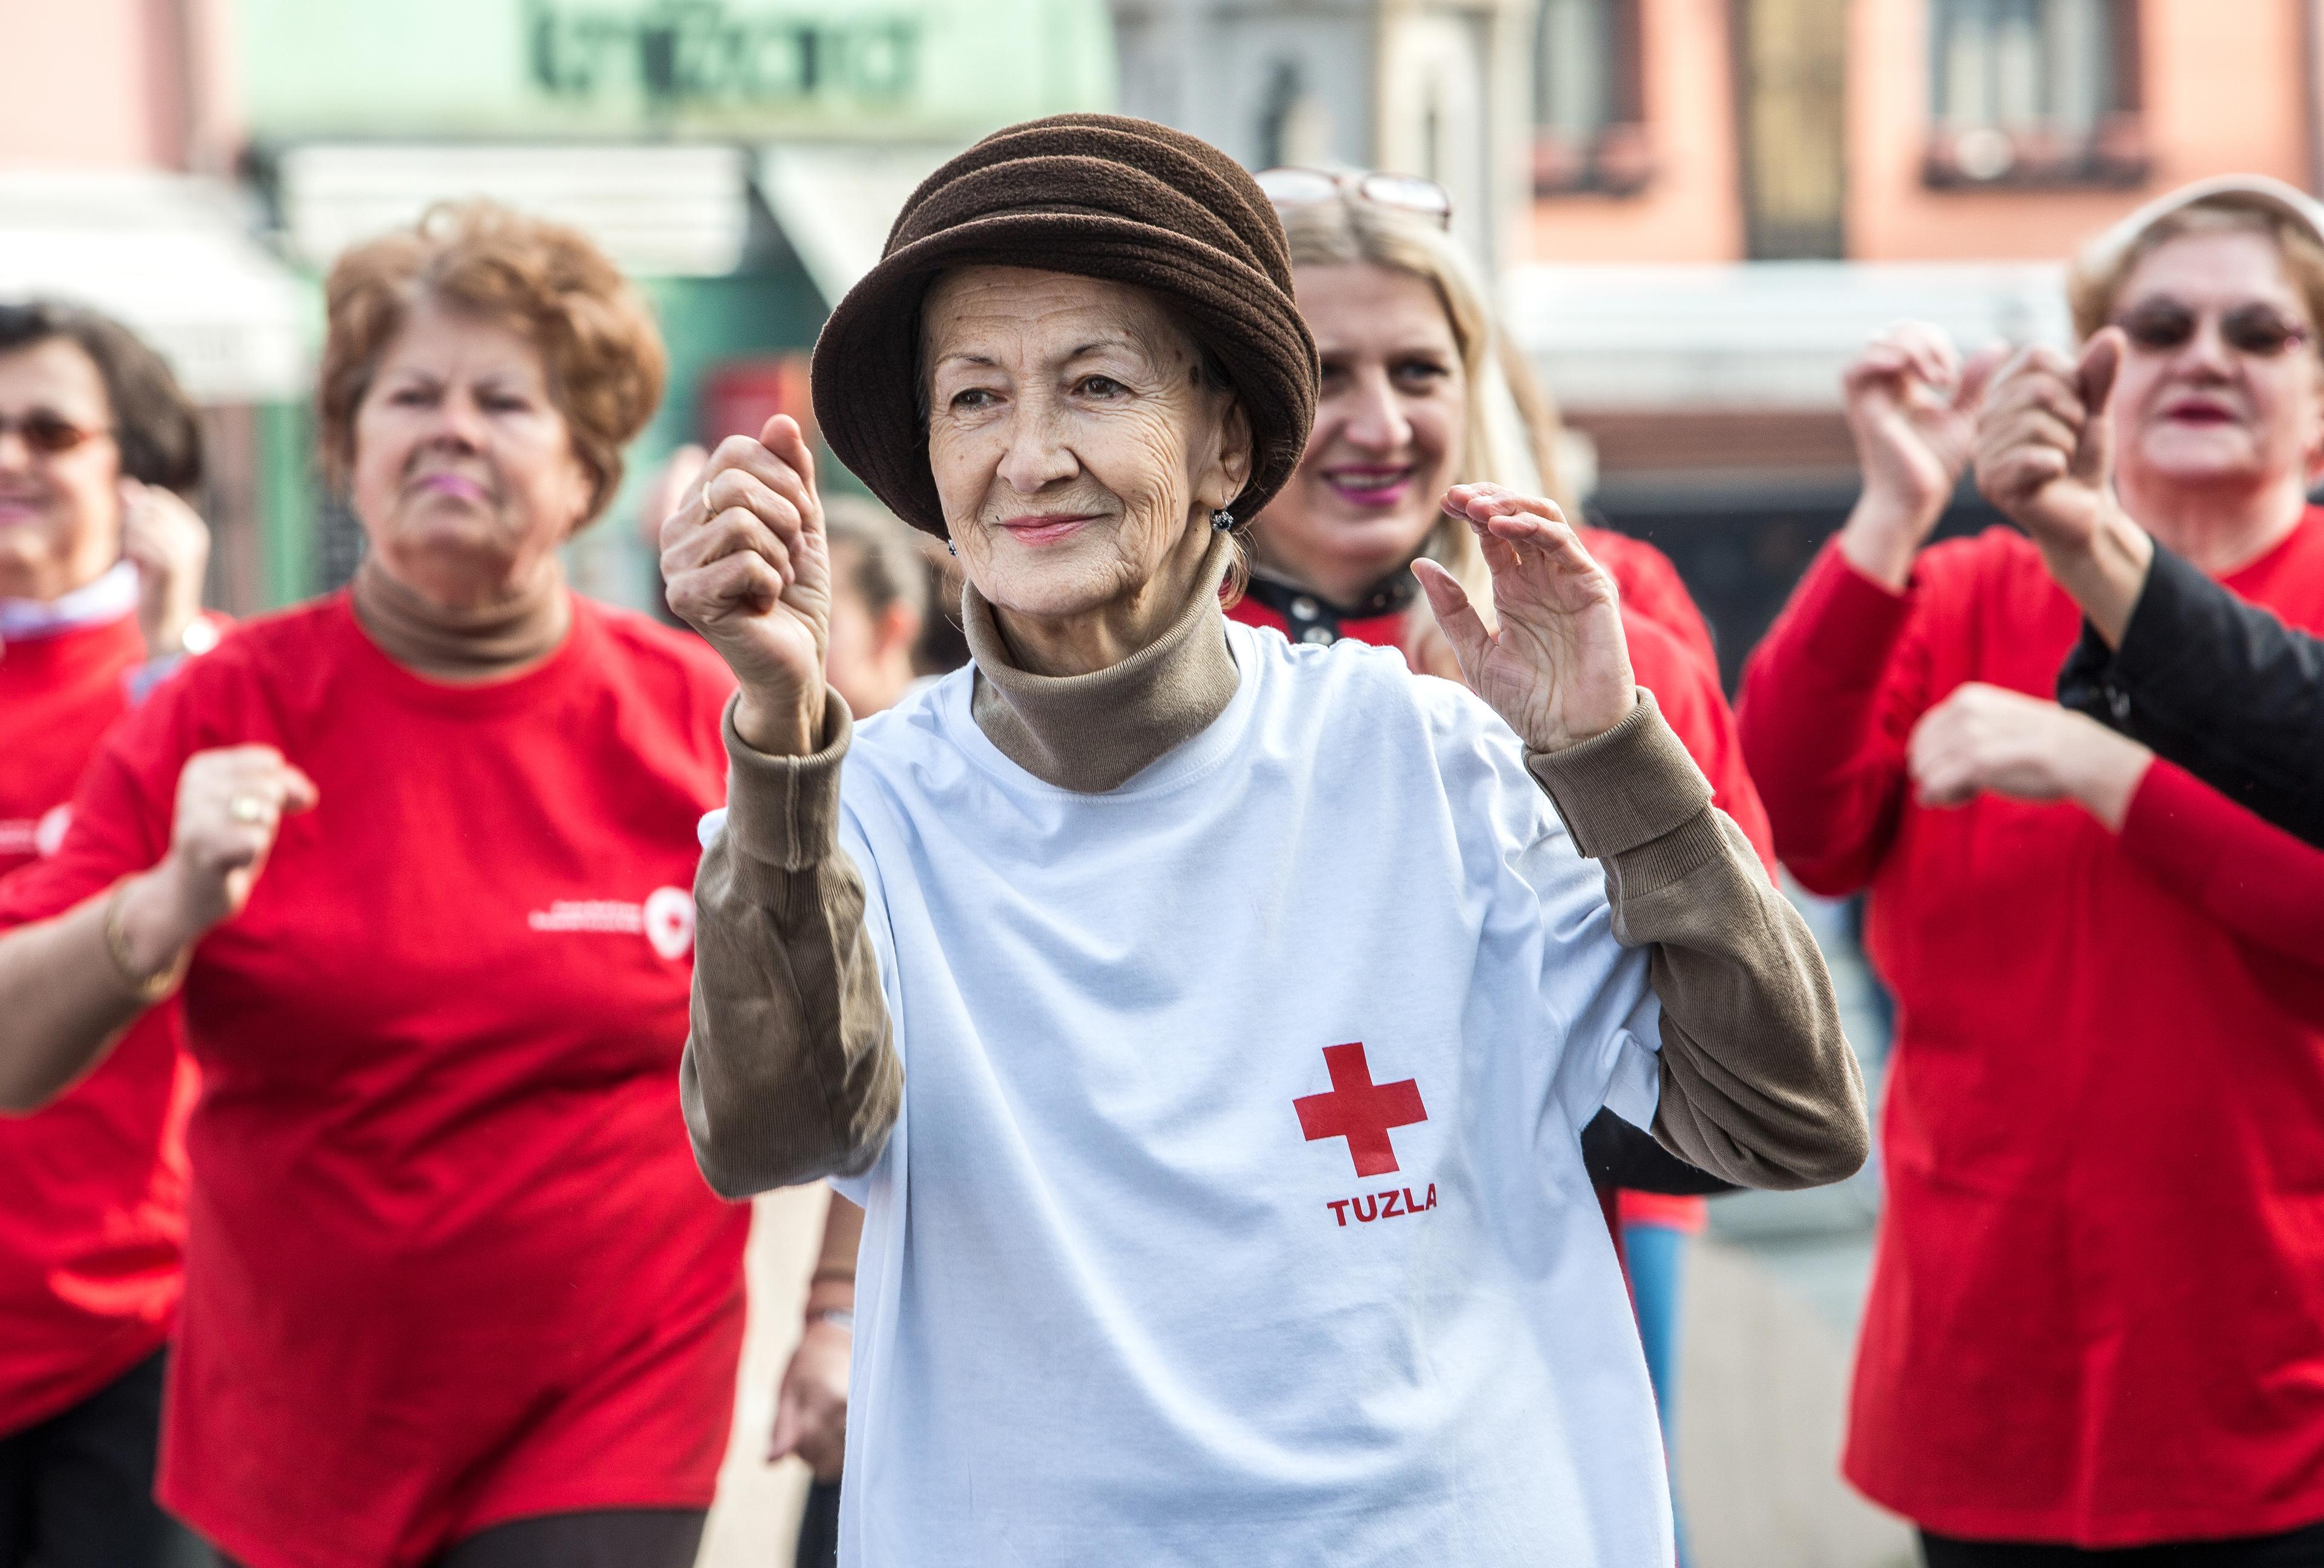 Des femmes âgées lors d'un entraînement physique. Elles semblent prendre plaisir à faire du sport. Une dame âgée porte un chapeau et un T-shirt à l'effigie de la Croix-Rouge de Tuzla (Bosnie).